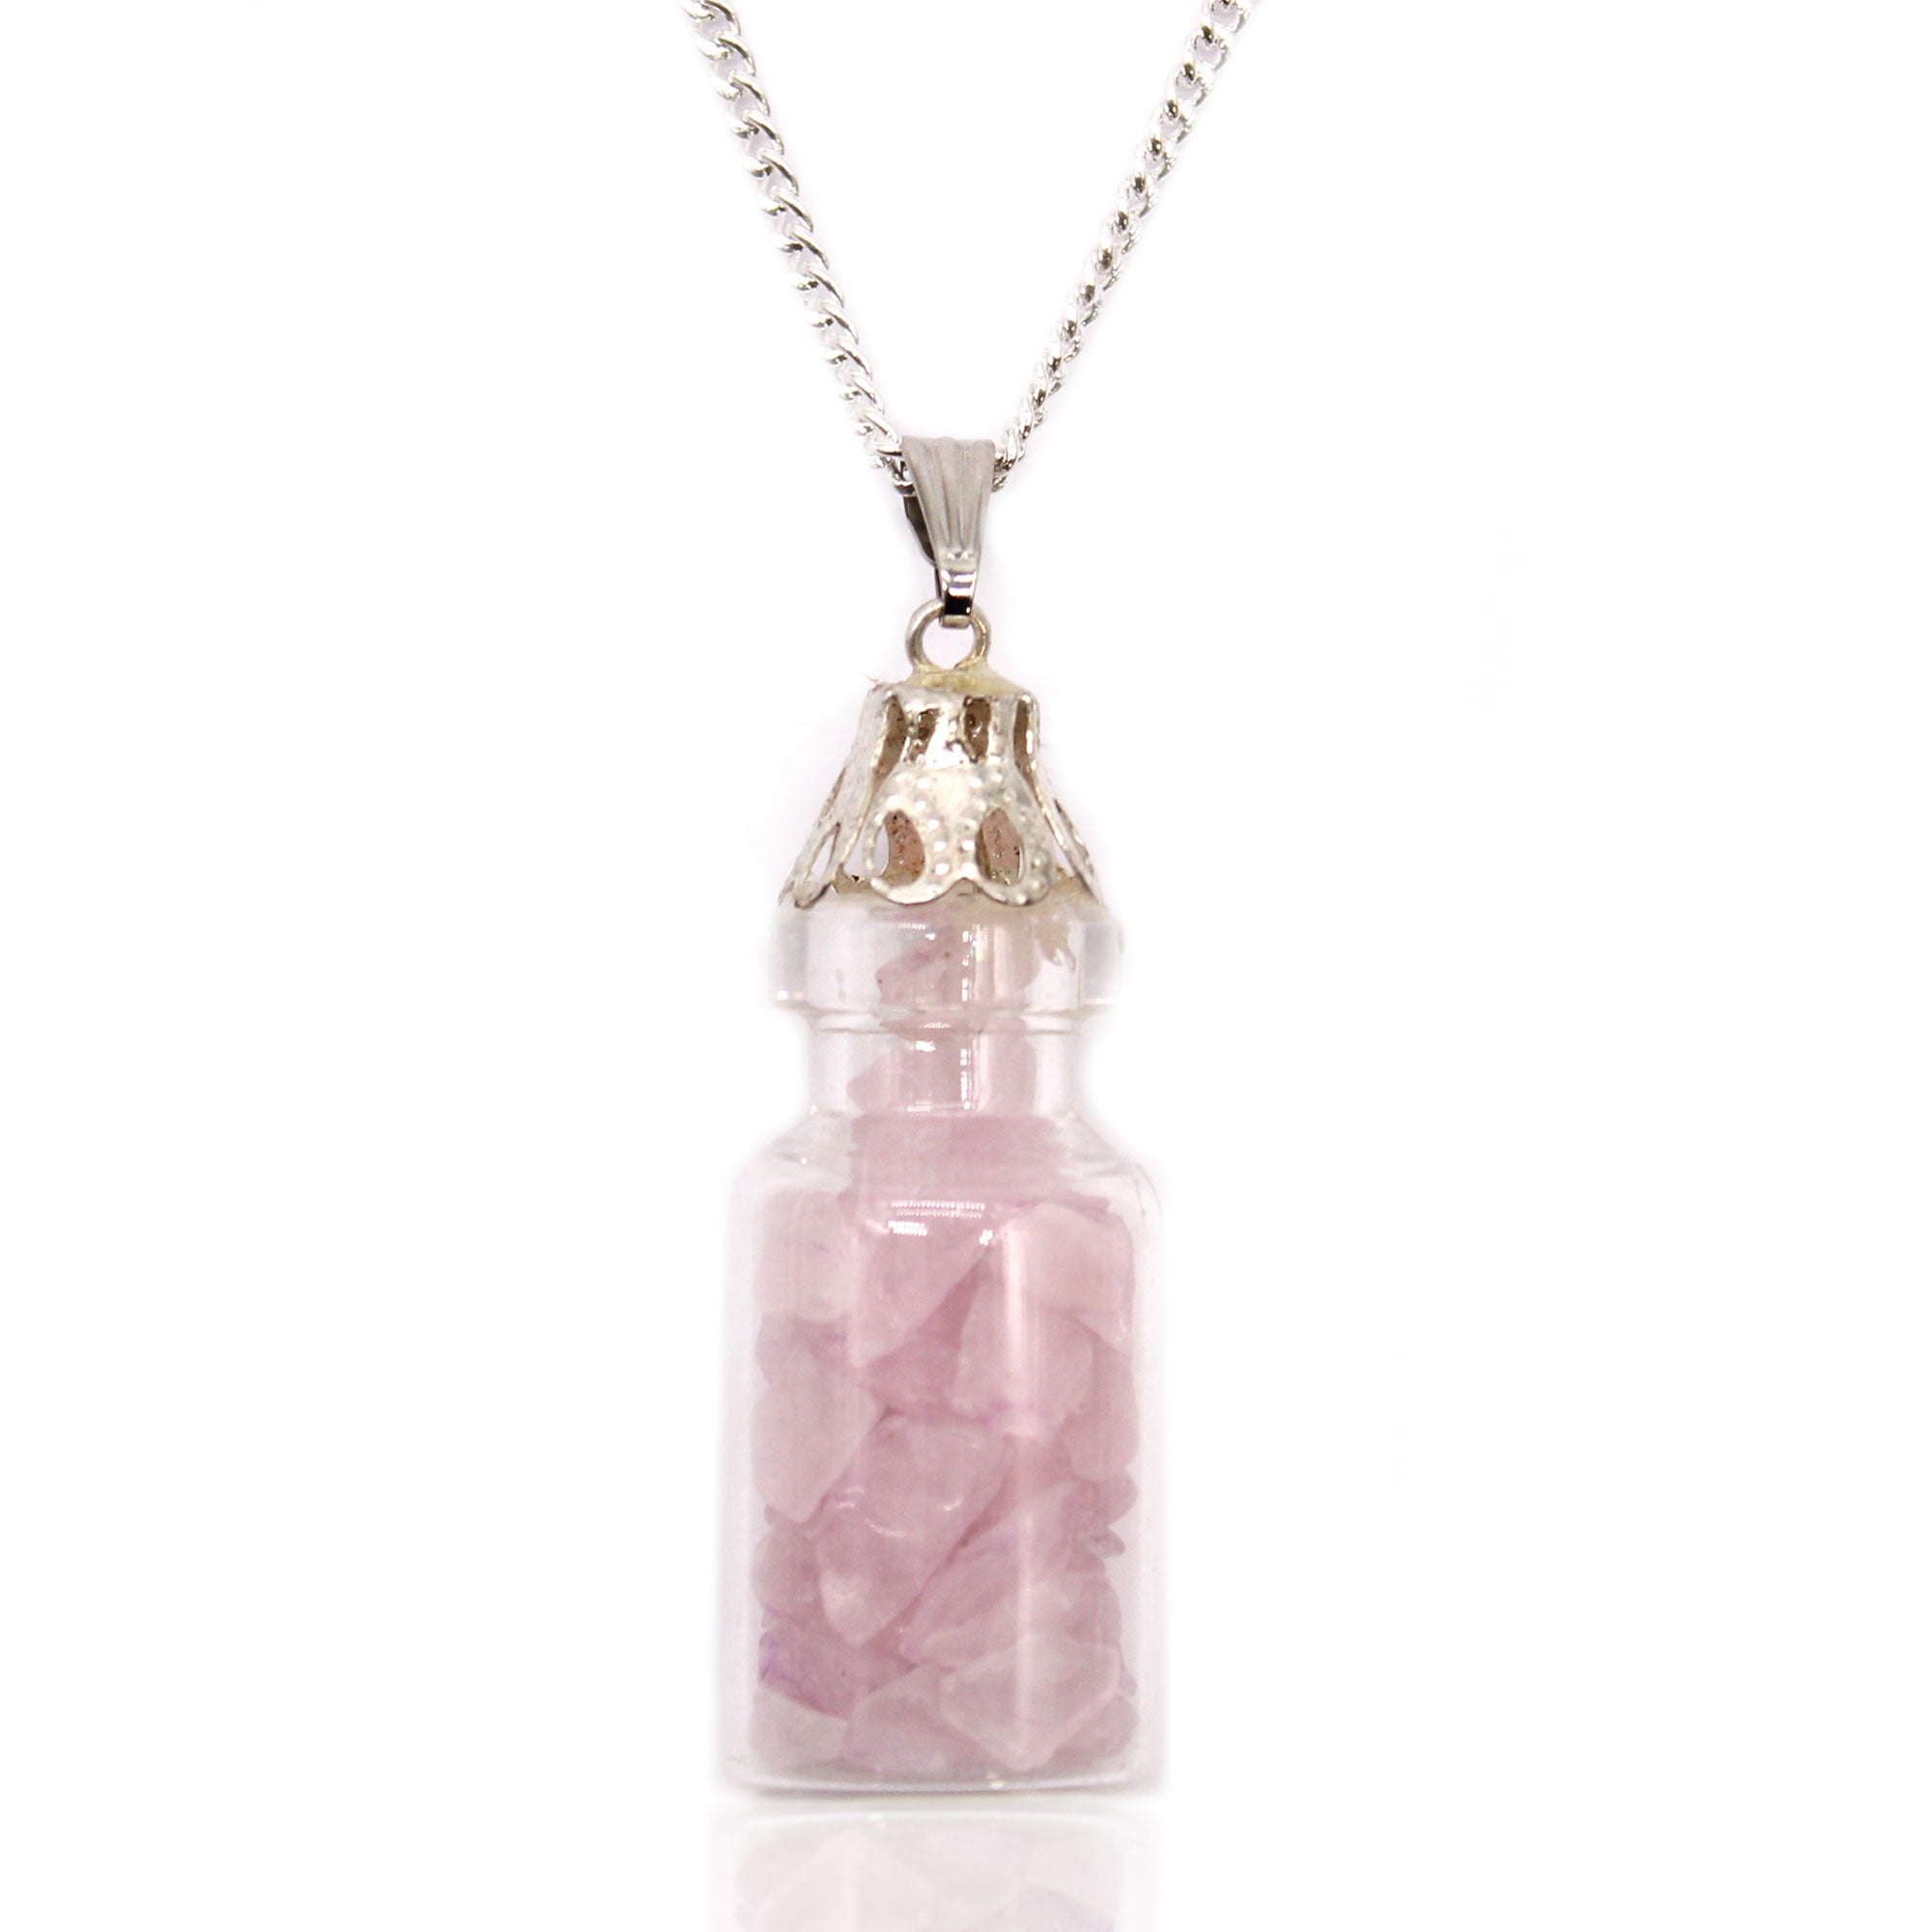 View Bottled Gemstones Necklace Rose Quartz information